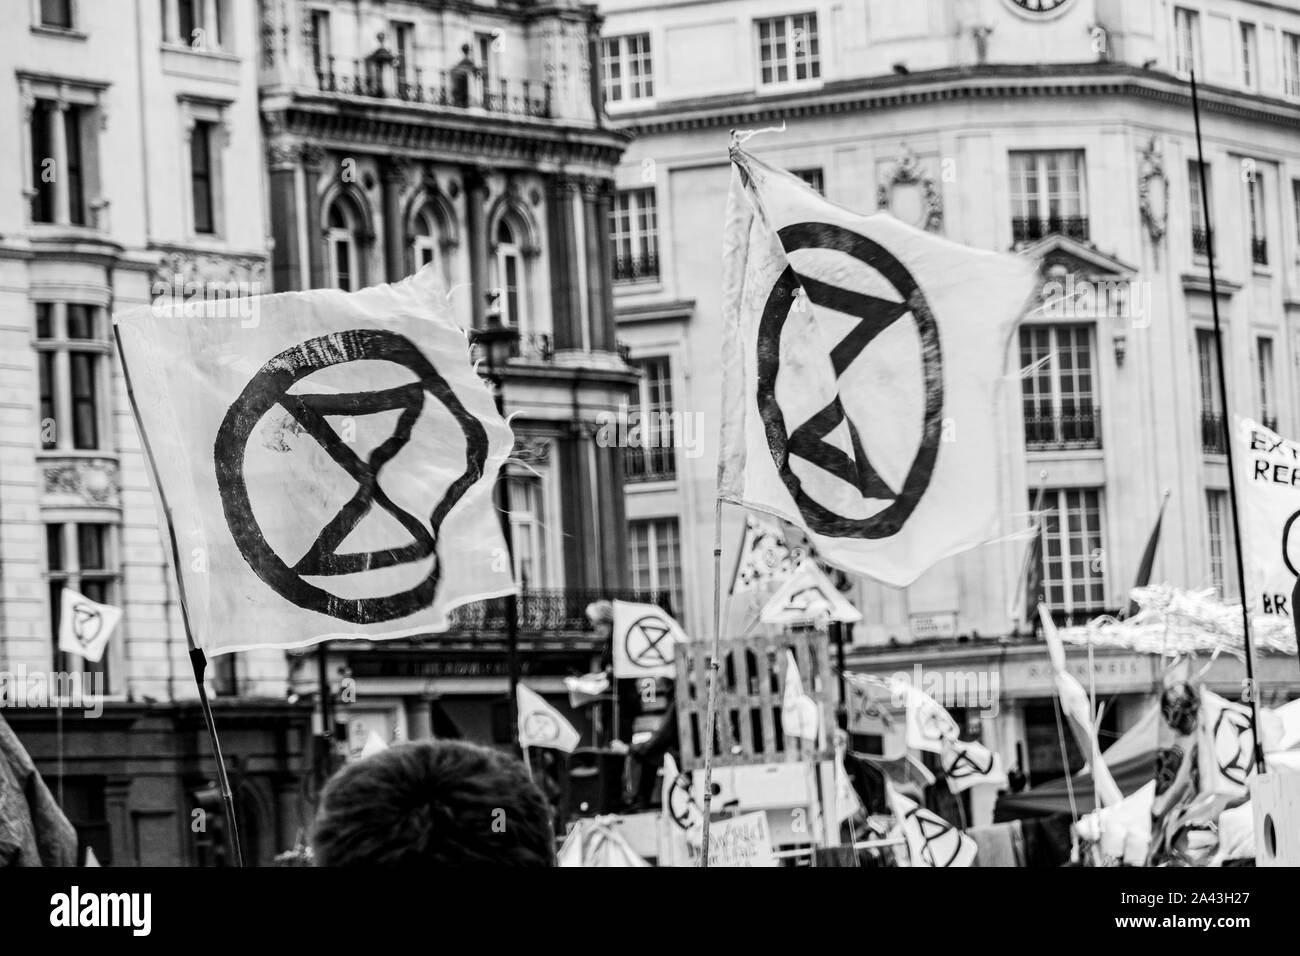 Estinzione Rebellion, occupare Trafalgar Square a Londra, chiedendo al governo di agire ora contro il cambiamento climatico Foto Stock